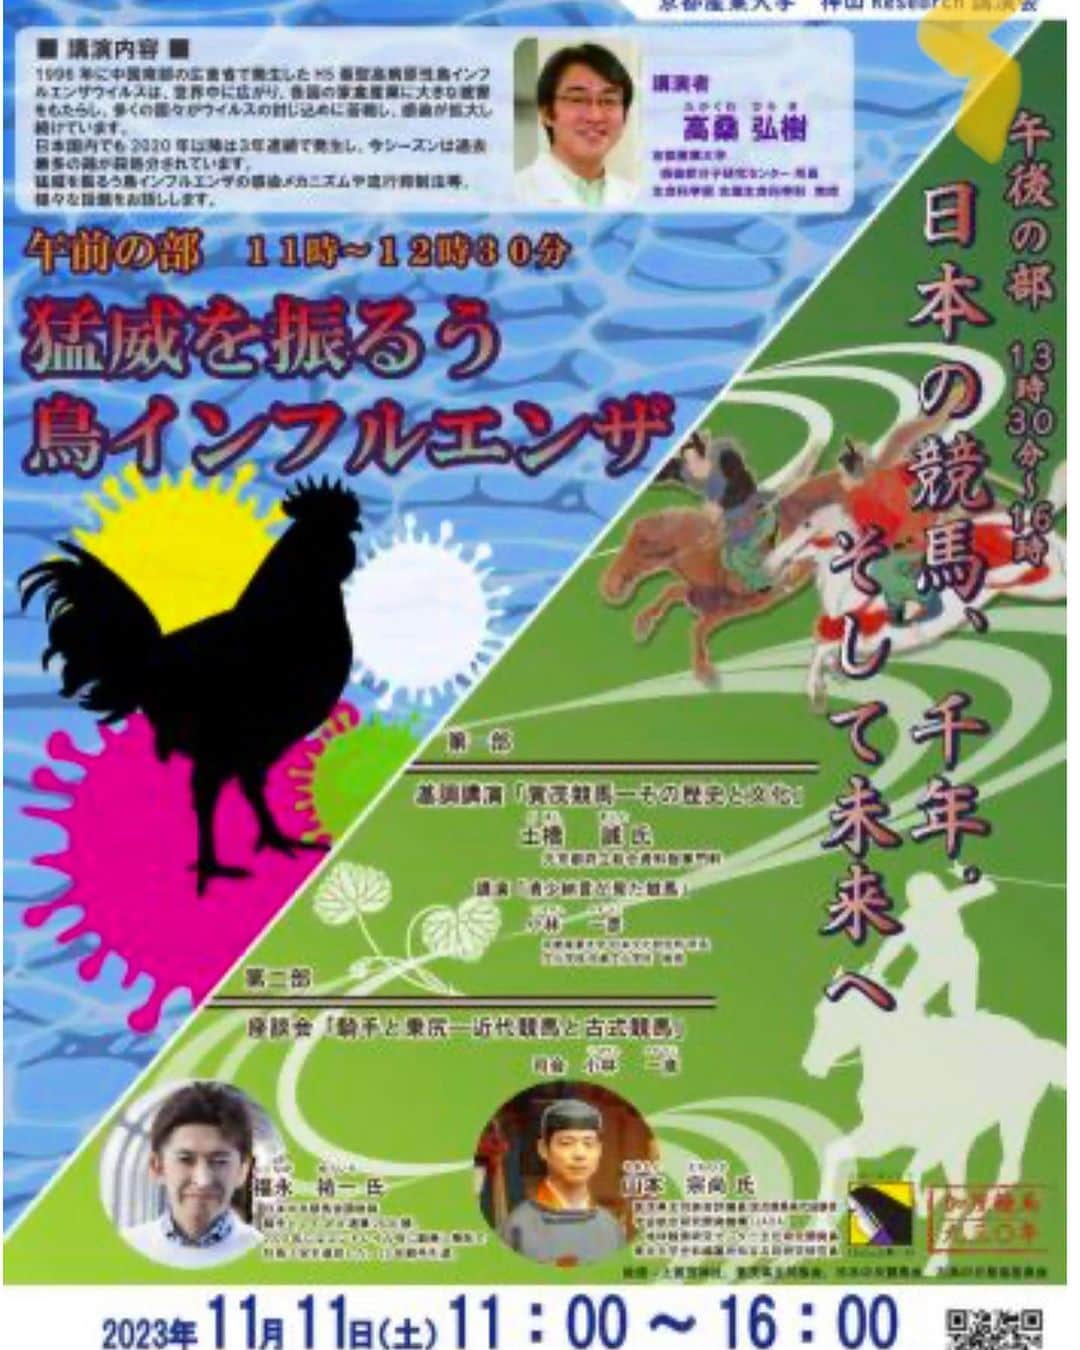 福永祐一のインスタグラム：「11月11日に京都産業大学でのイベントに参加させていただきます。近代競馬と古式競馬について小林一彦教授、山本宗尚さんと座談会をするとの事で、今まで触れることのなかった古式競馬の話を伺えるのをとても楽しみにしています。 ぜひ多くの方に参加していただきたいと思います。よろしくお願いします☺️ 詳しくは京都産業大学のホームページをご覧ください https://www.kyoto-su.ac.jp/events/20231011_850_kouen.html  #福永祐一 #京都産業大学 #古式競馬#小林一彦 #山本宗尚 #イベント#座談会」